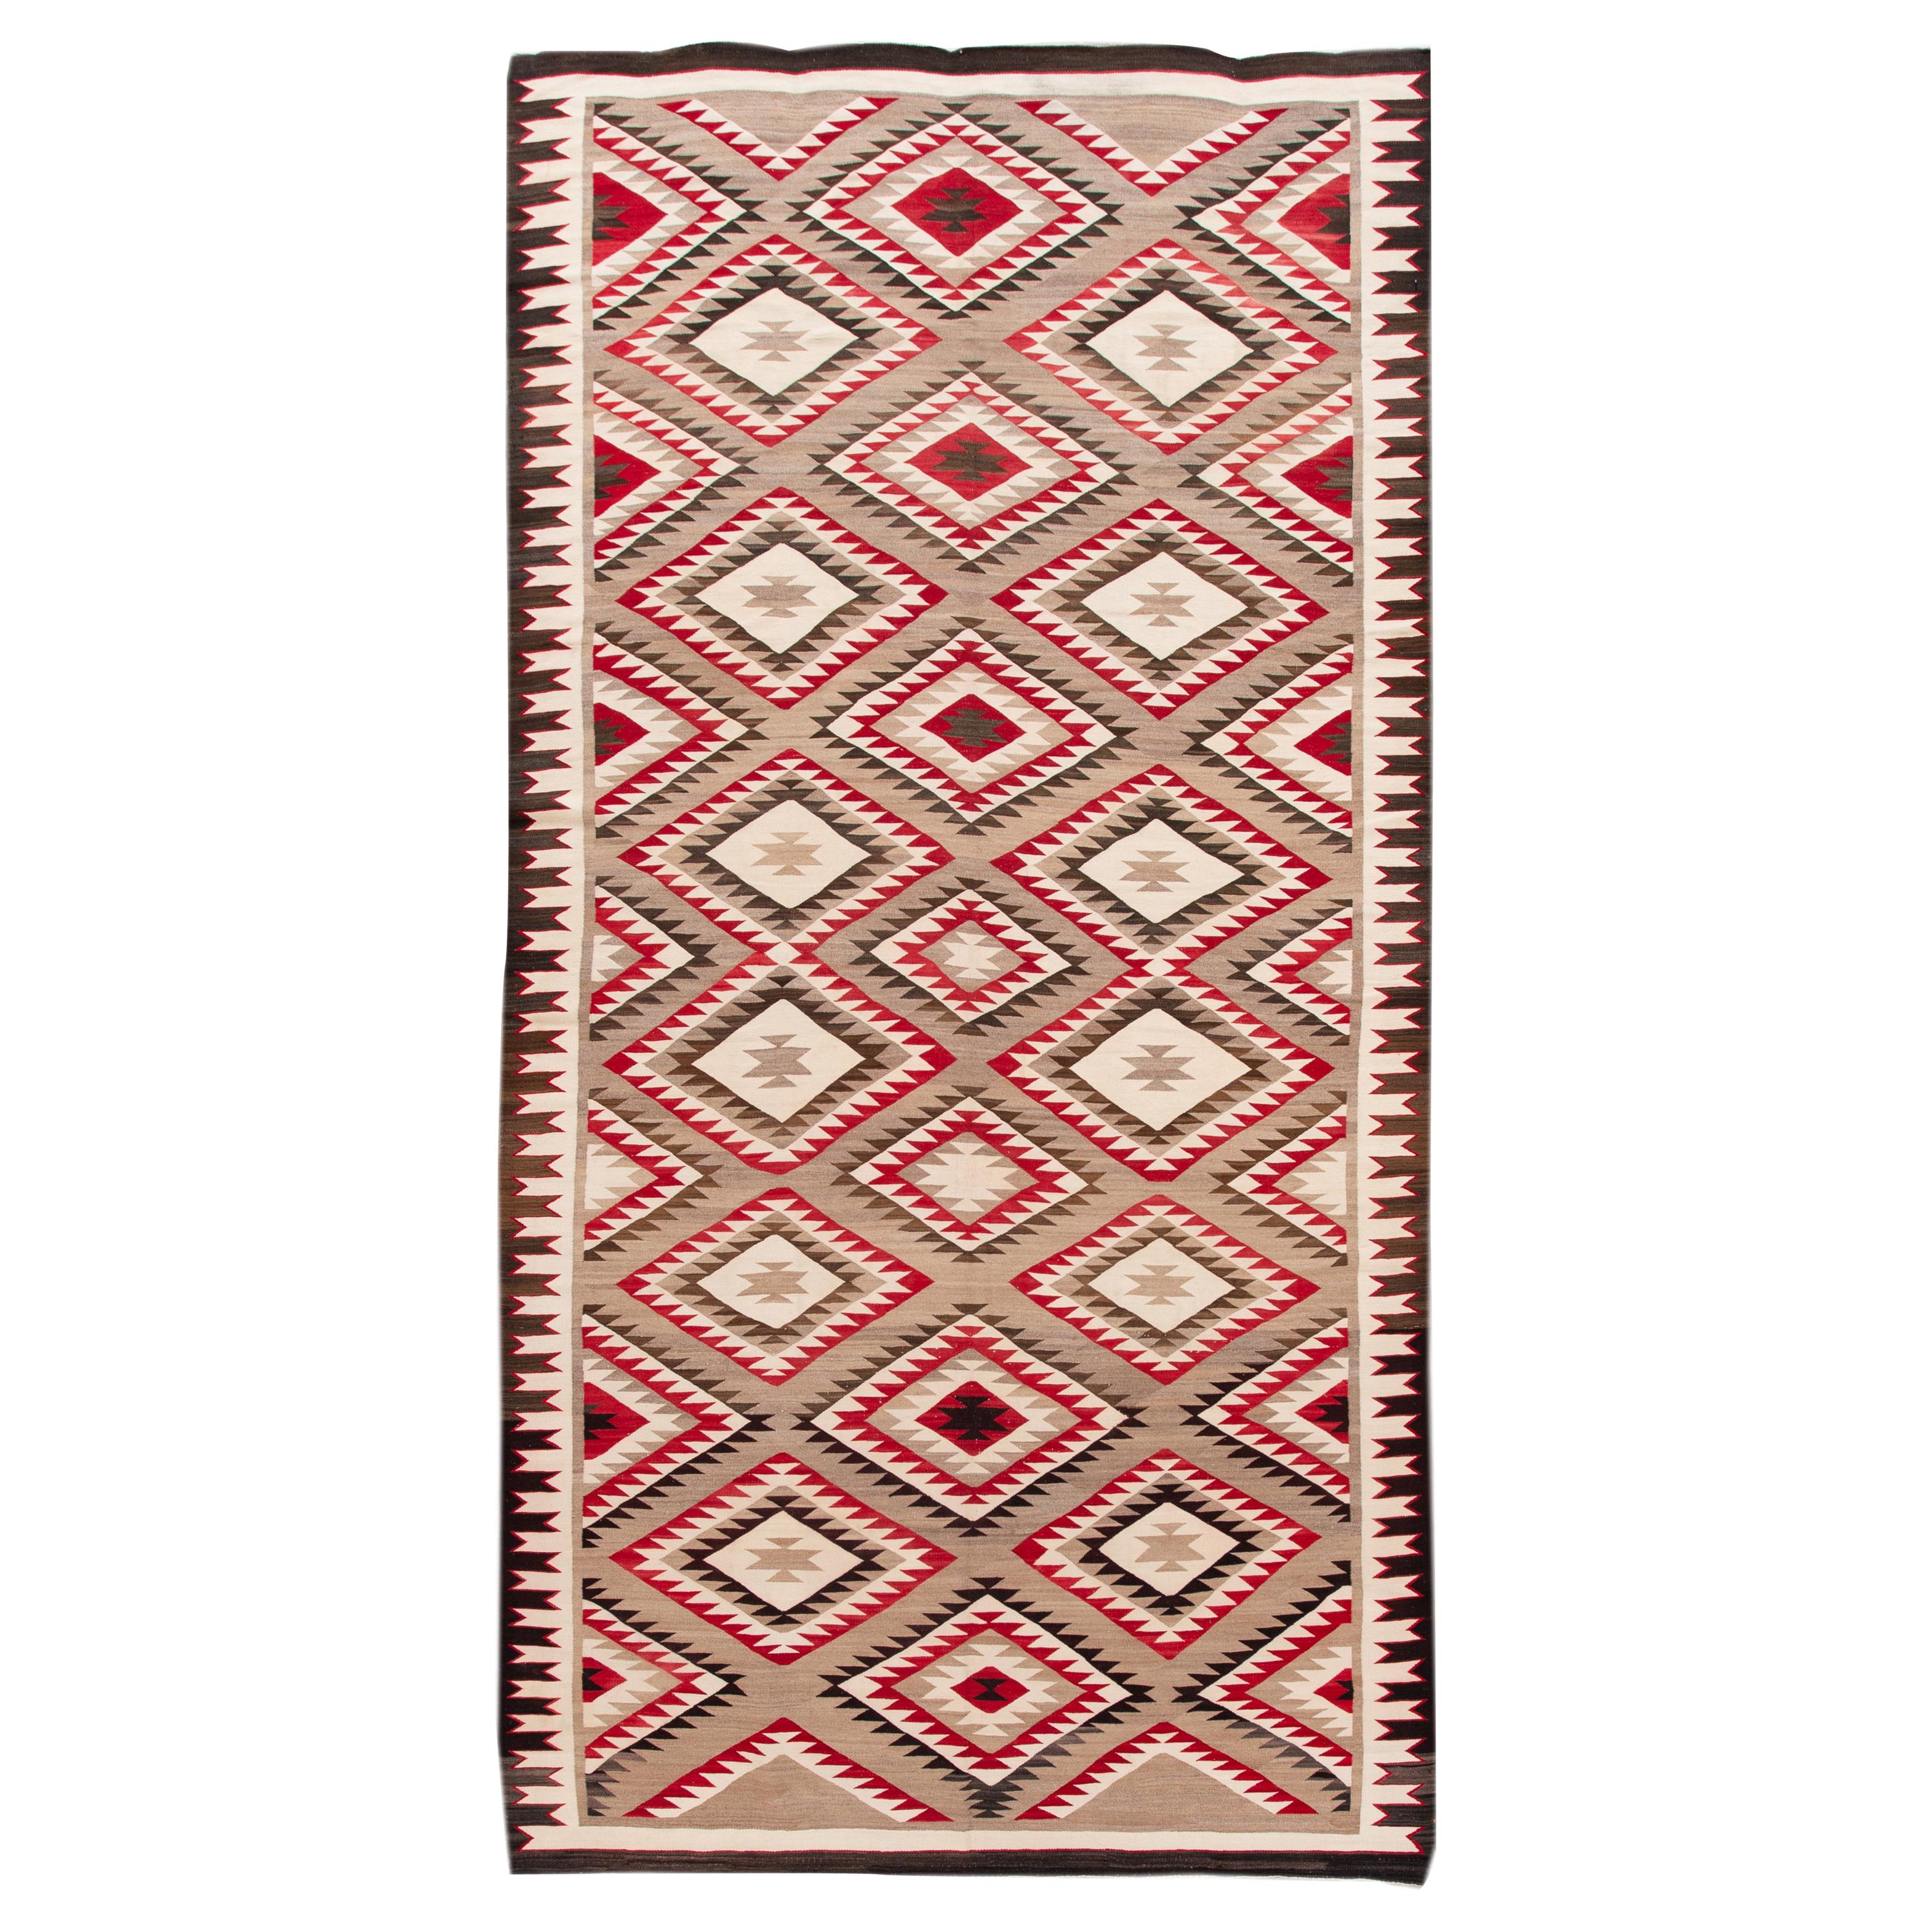 American Antique Navajo Geometric Folk Navajo Flat-Weave Wool Rug